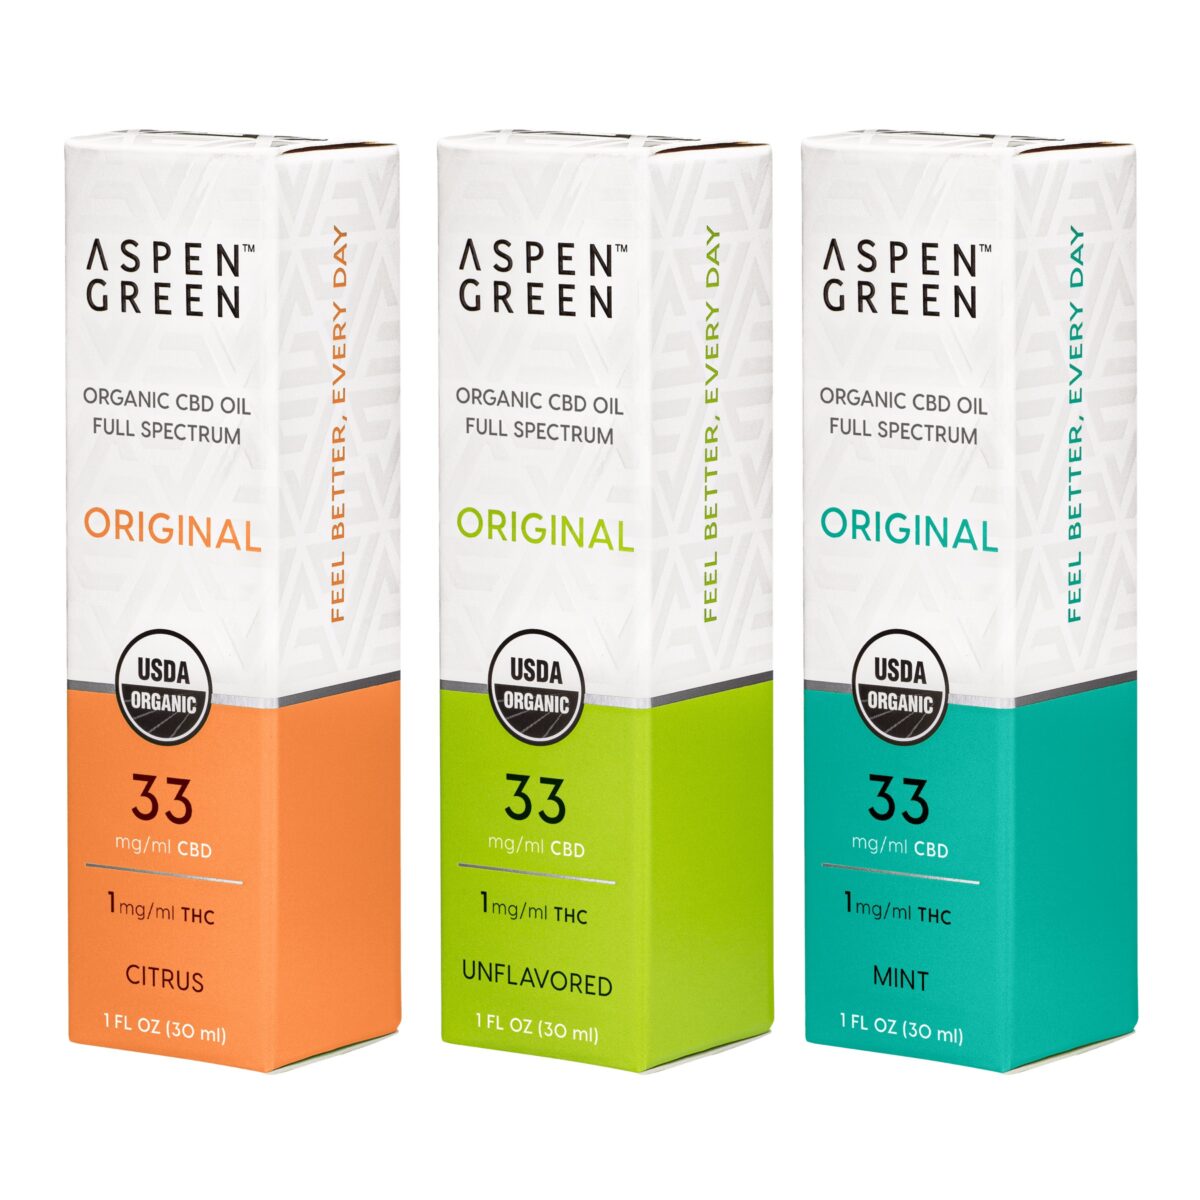 Aspen Green Original Multi-Flavor Organic CBD Oil boxes